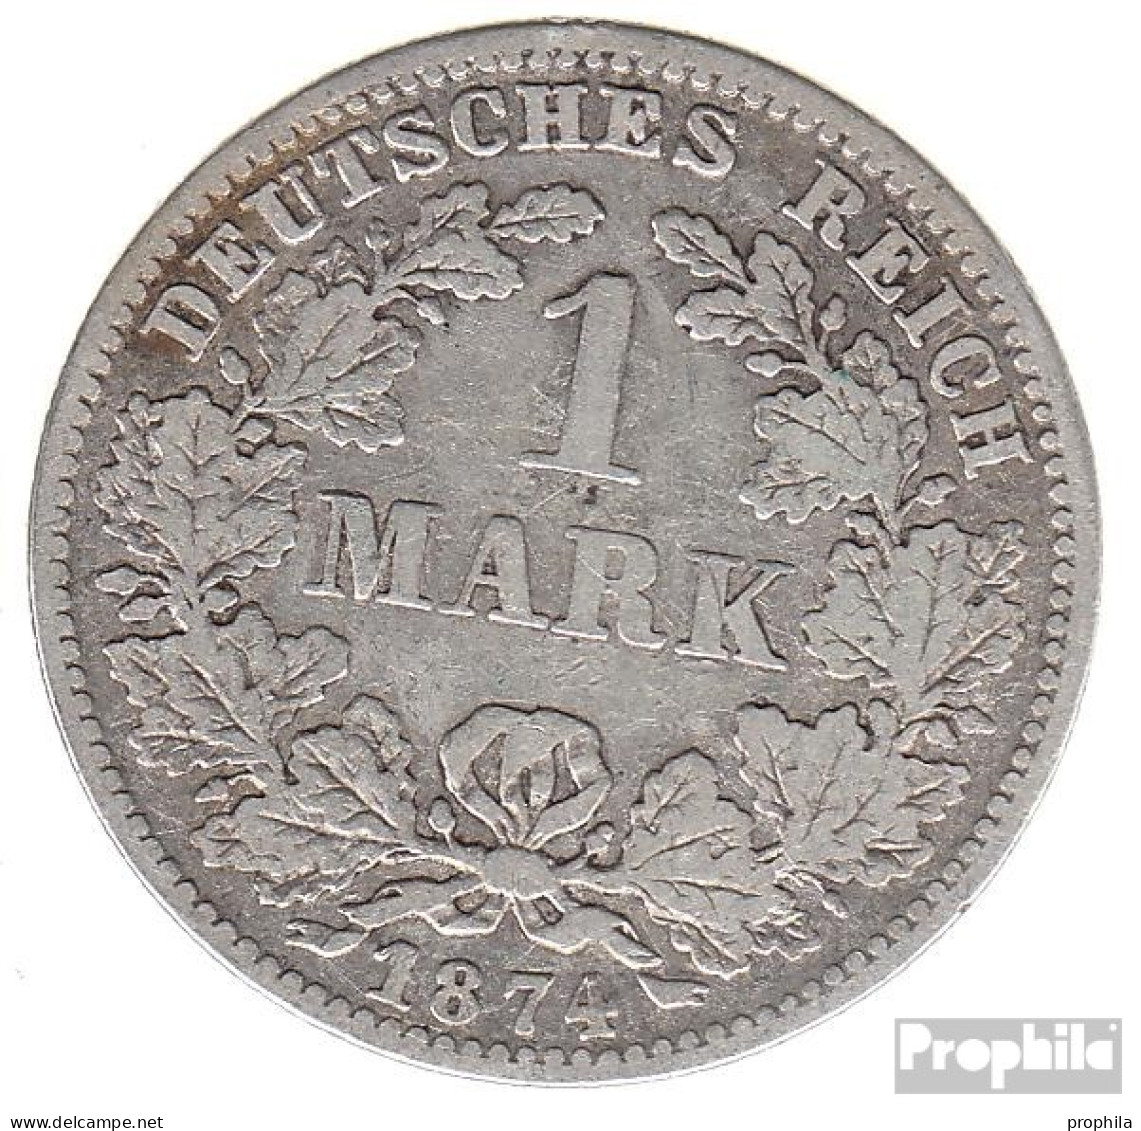 Deutsches Reich Jägernr: 9 1875 A Vorzüglich Silber Vorzüglich 1875 1 Mark Kleiner Reichsadler - 1 Mark